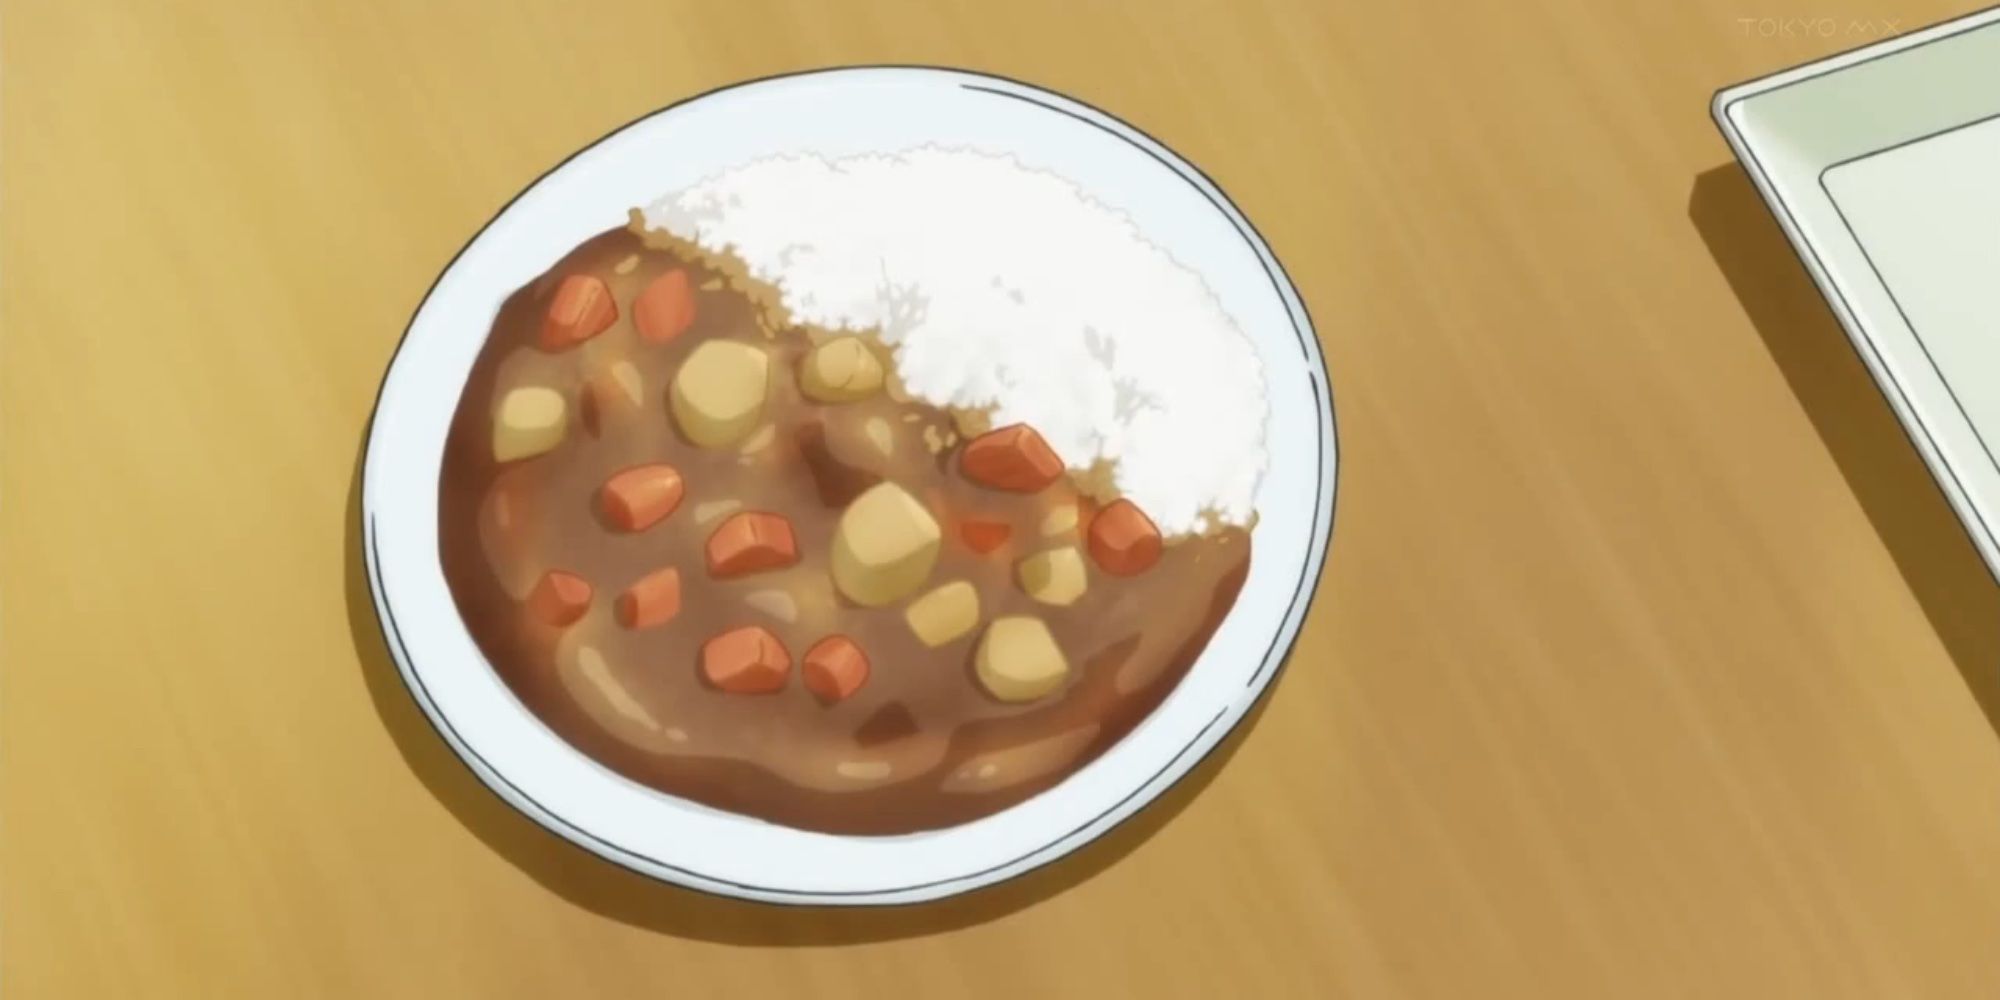 Anime Food Pasta GIF | GIFDB.com